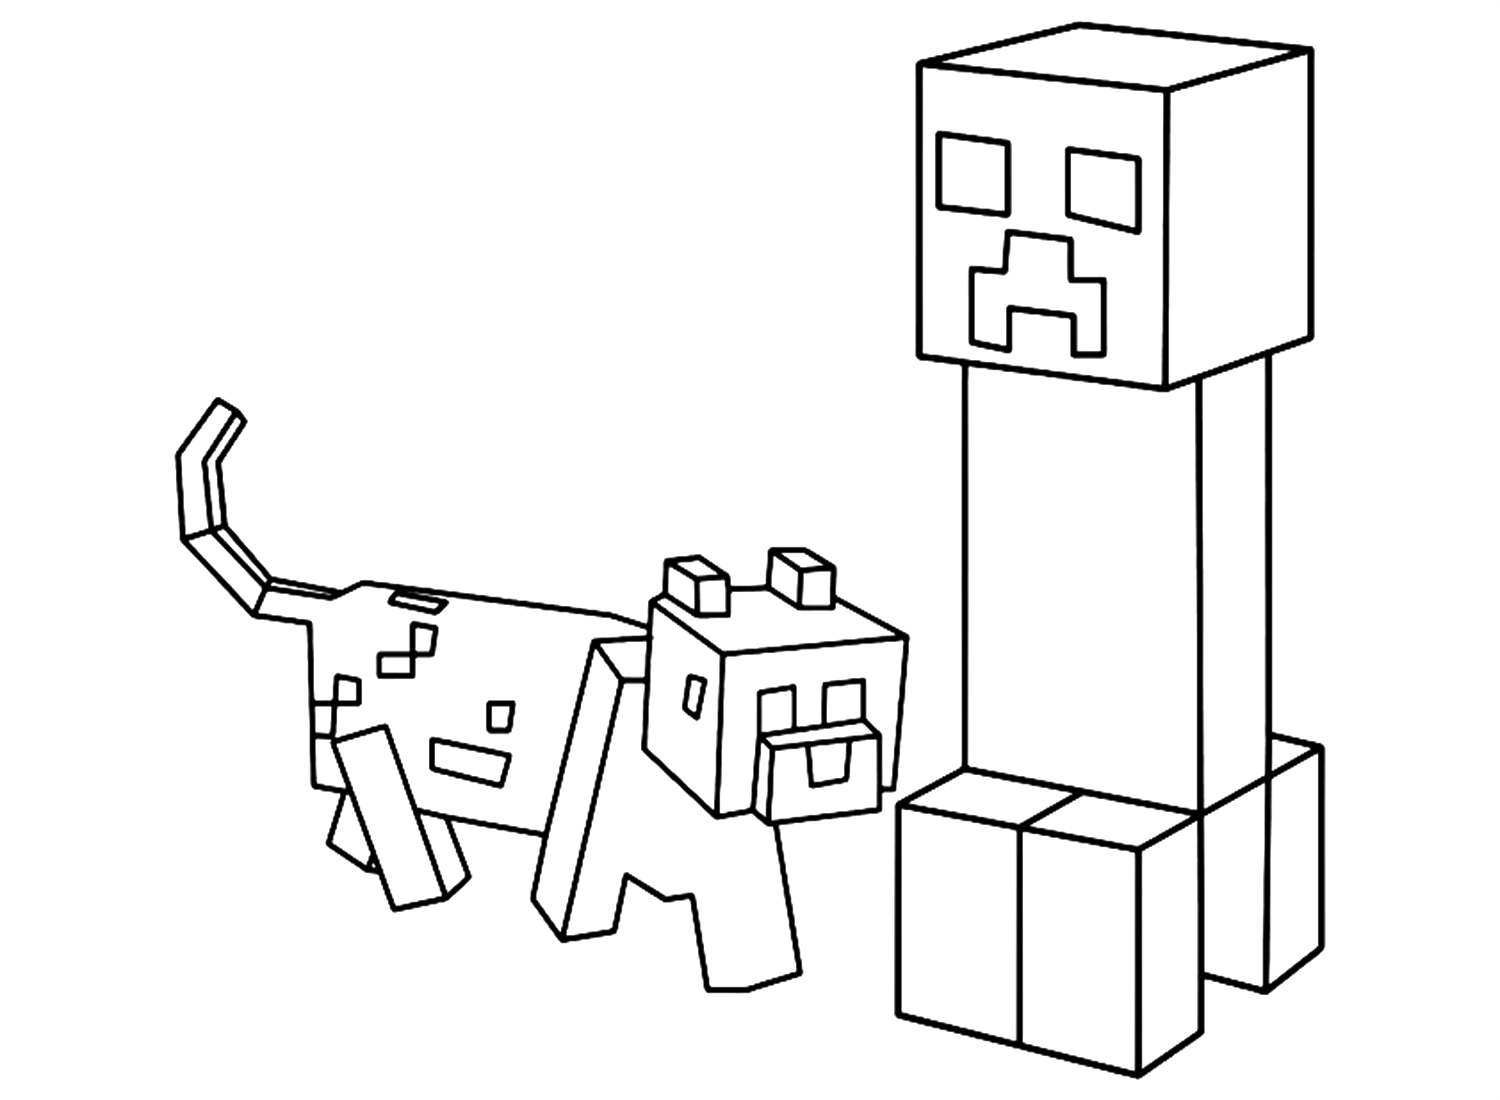 Imagens do Minecraft para imprimir